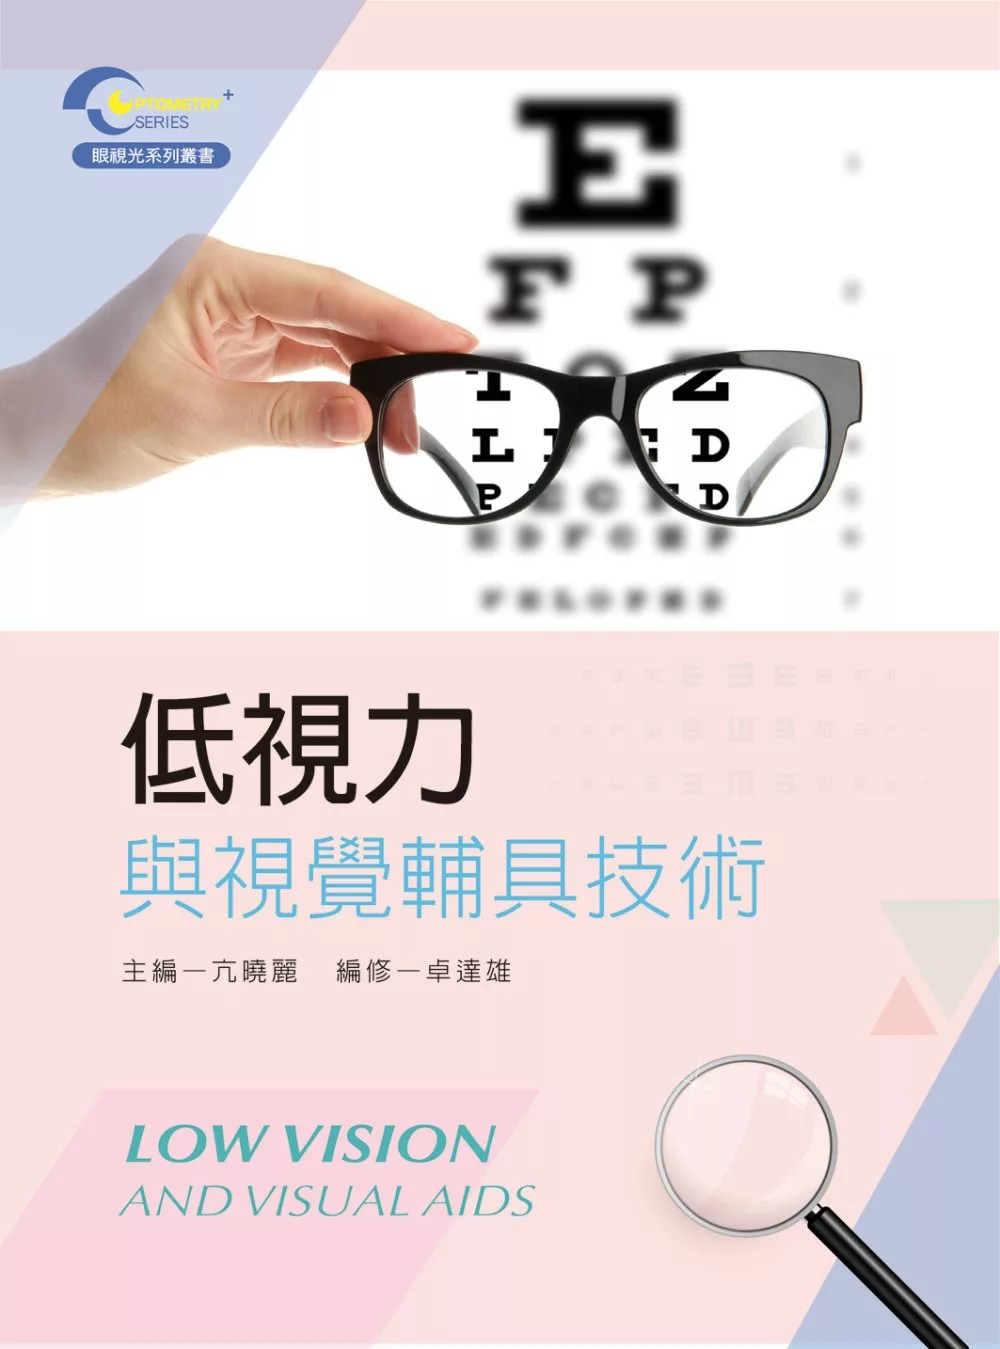 低視力與視覺輔具技術